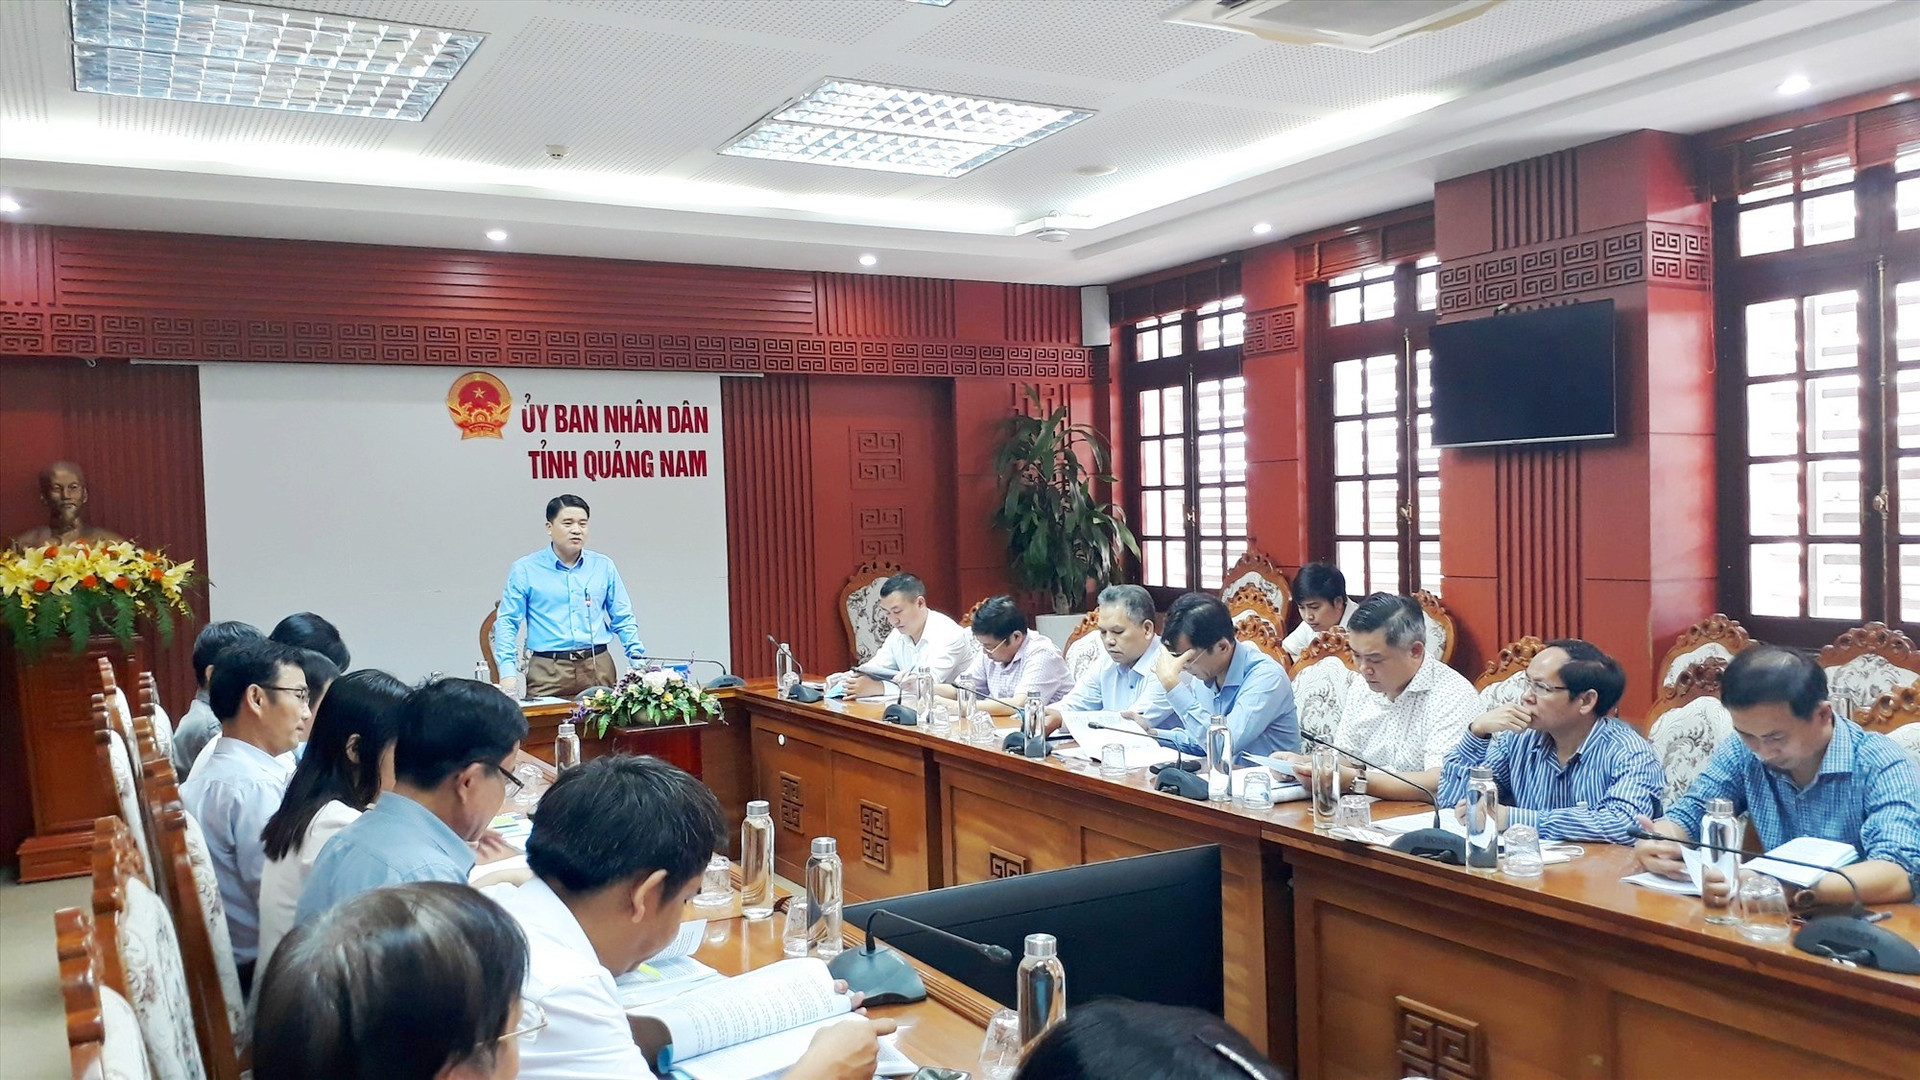 Theo Phó Chủ tịch UBND tỉnh Trần Văn Tân, đề án rất có ý nghĩa đến sự phát triển giáo dục miền núi. Ảnh: X.P